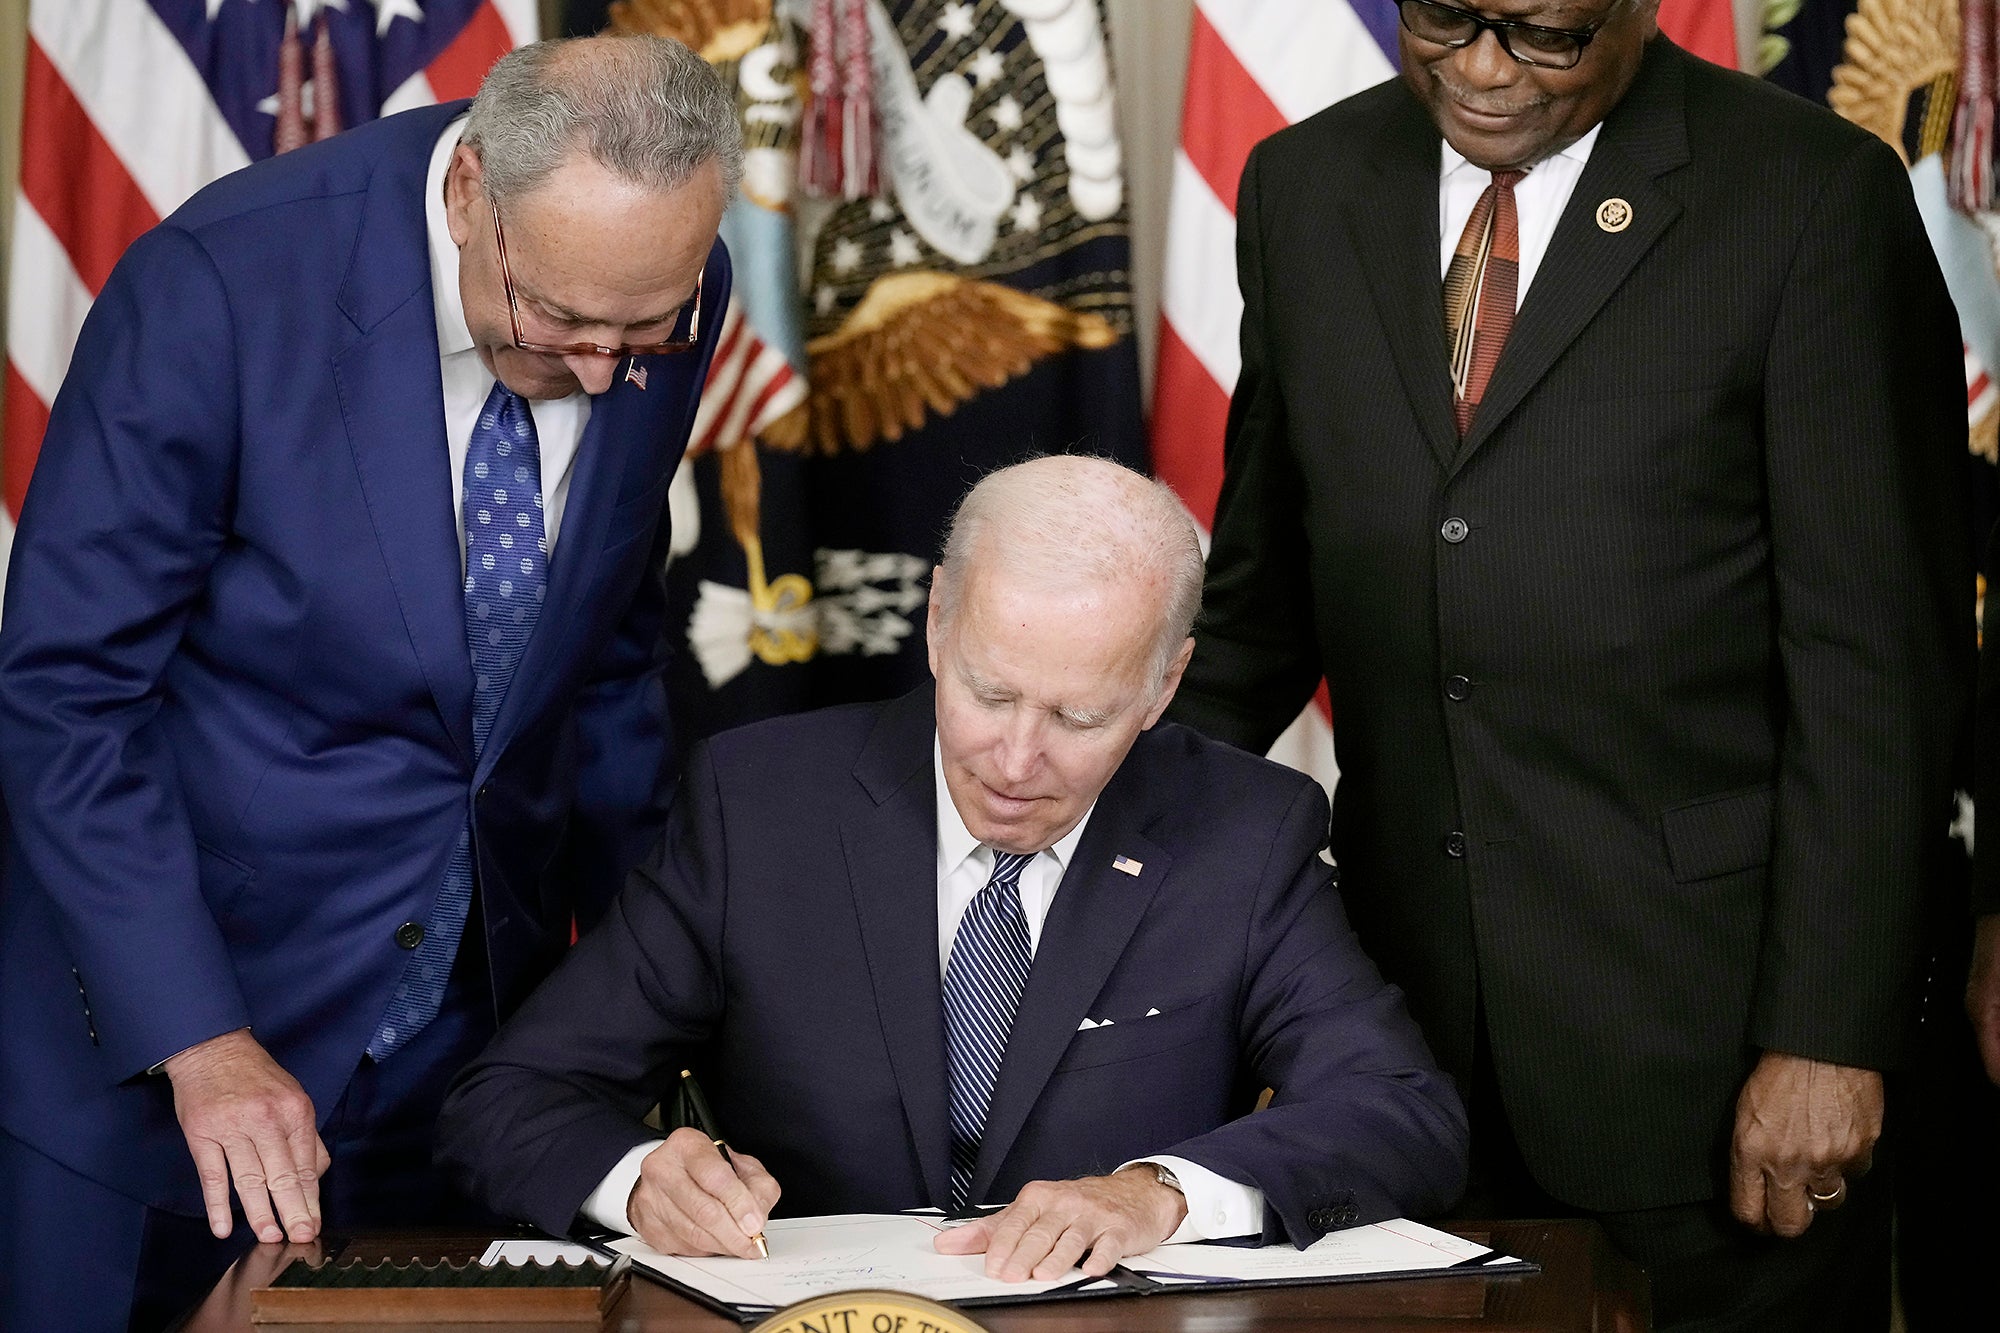 President Biden at a desk signing paper